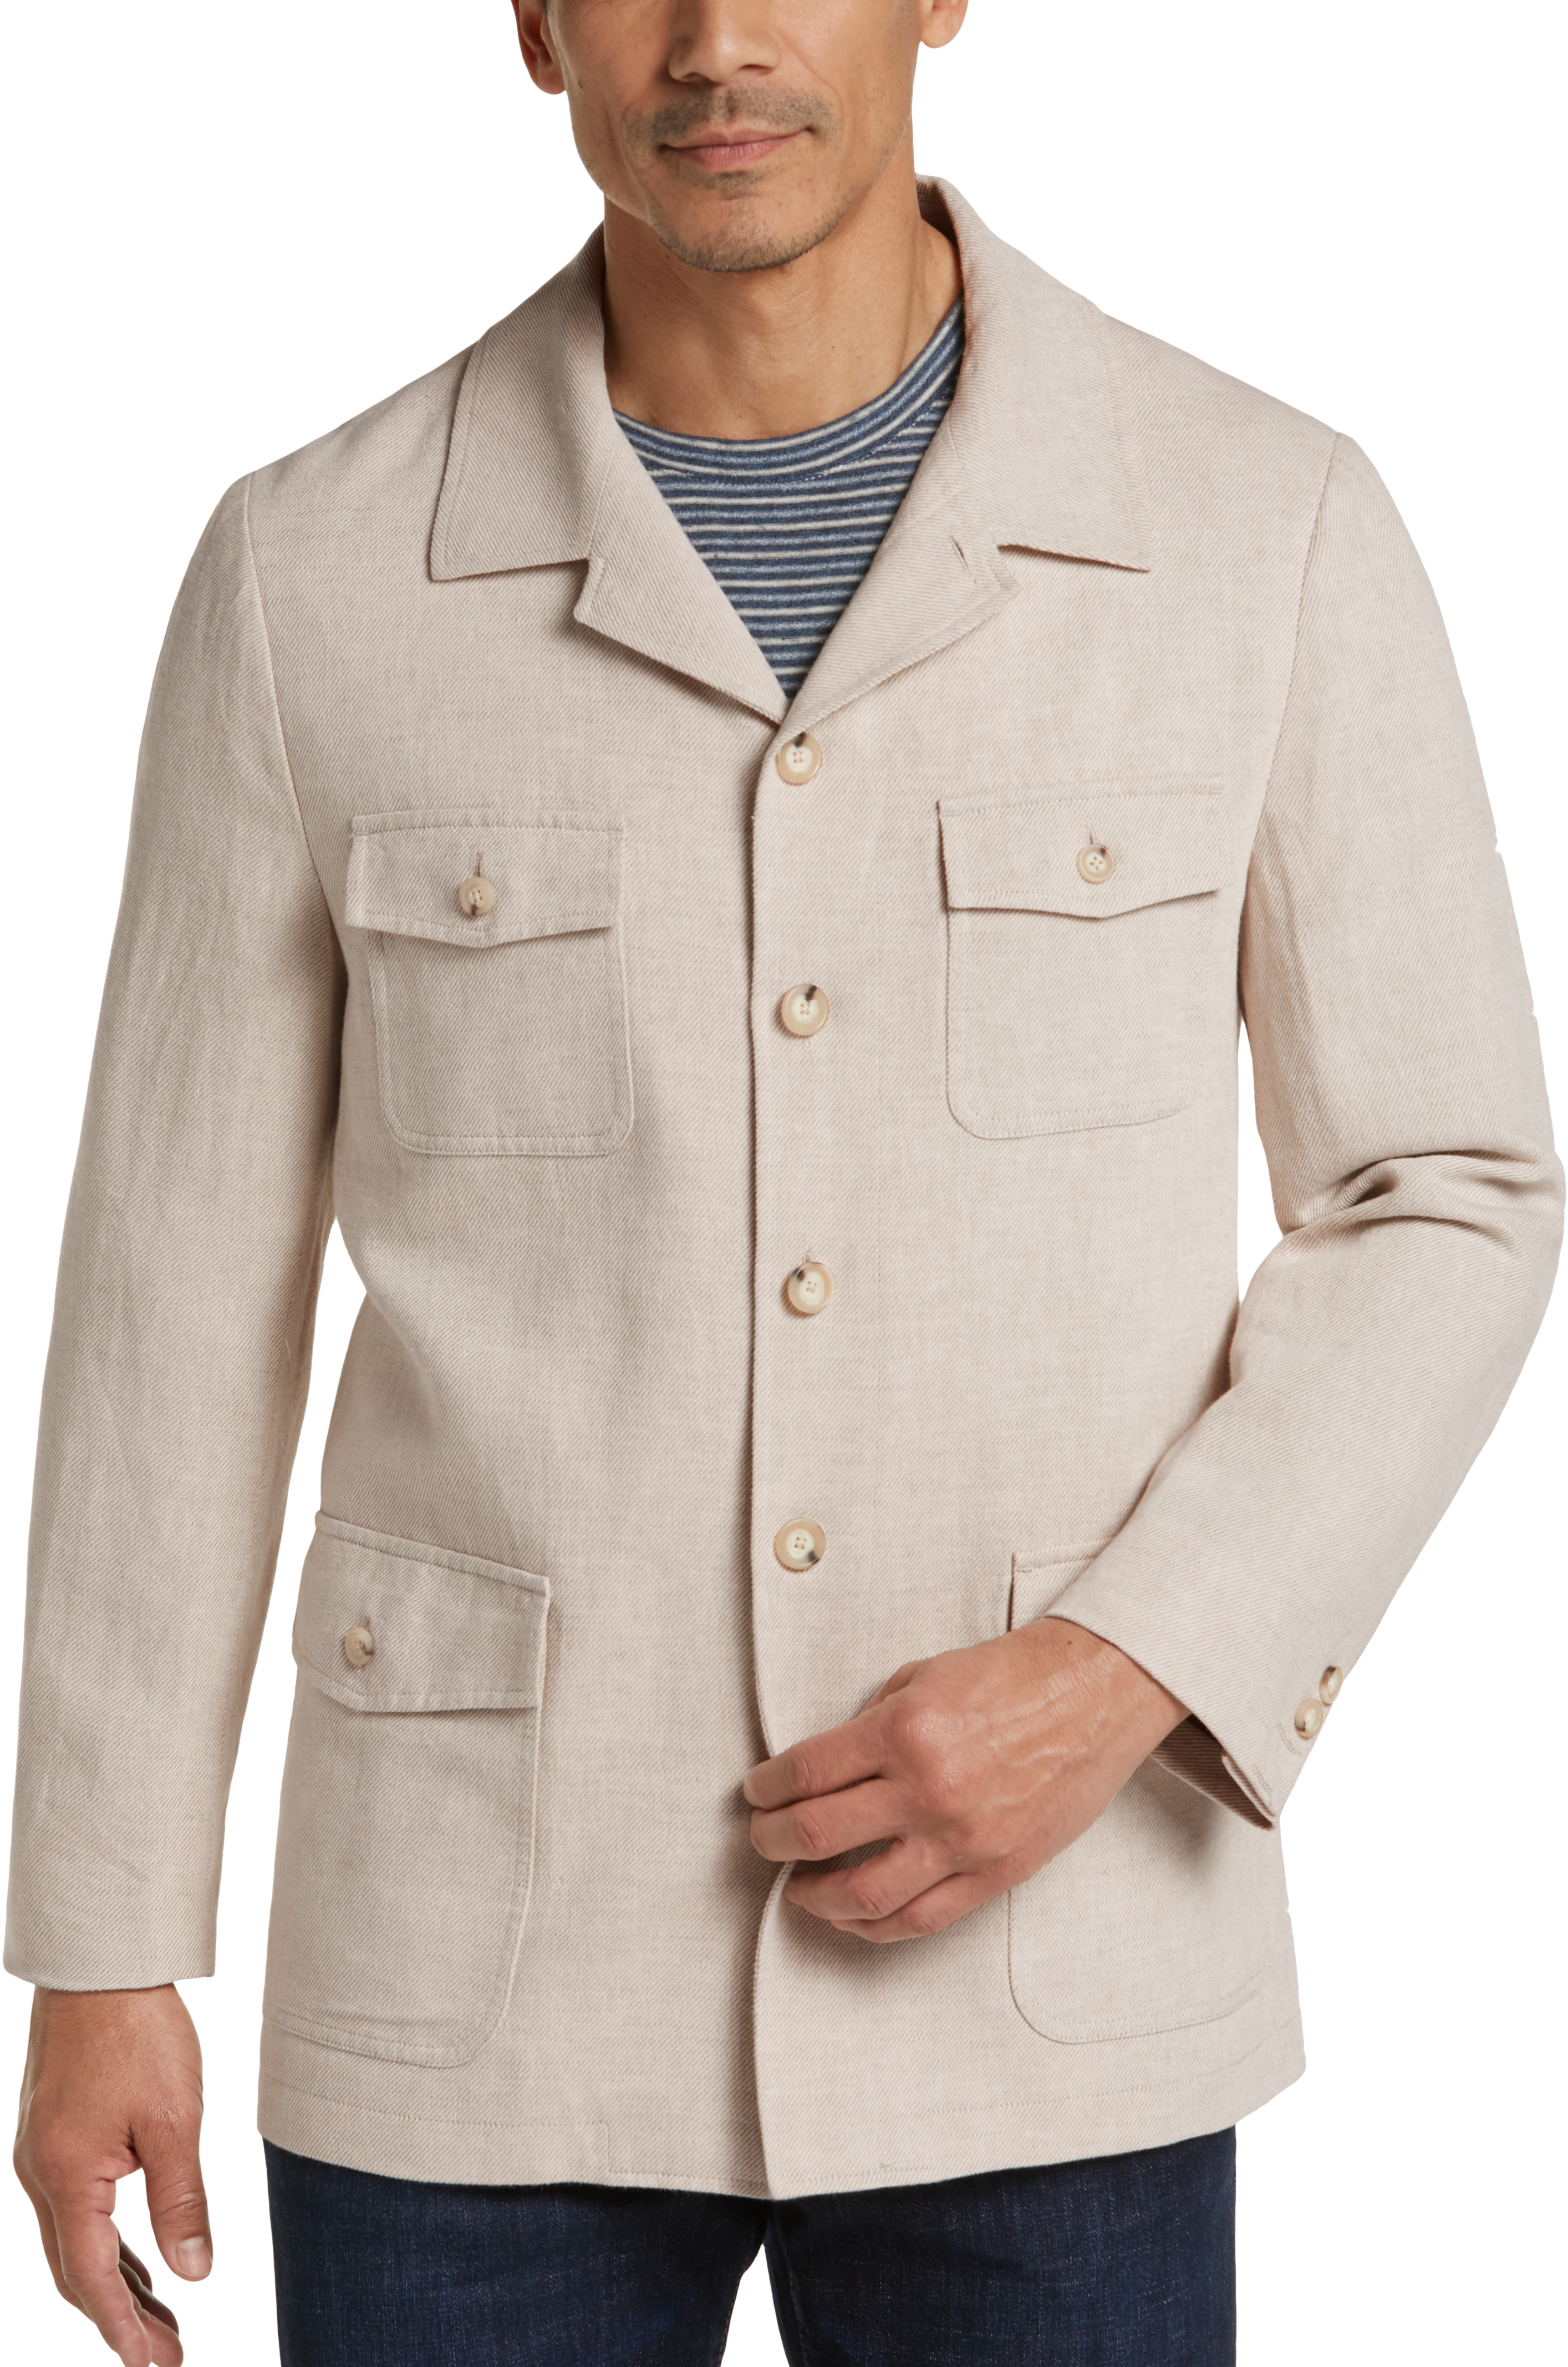 Joseph Abboud Tan Linen & Cotton Modern Fit Casual Coat - Men's Sale ...